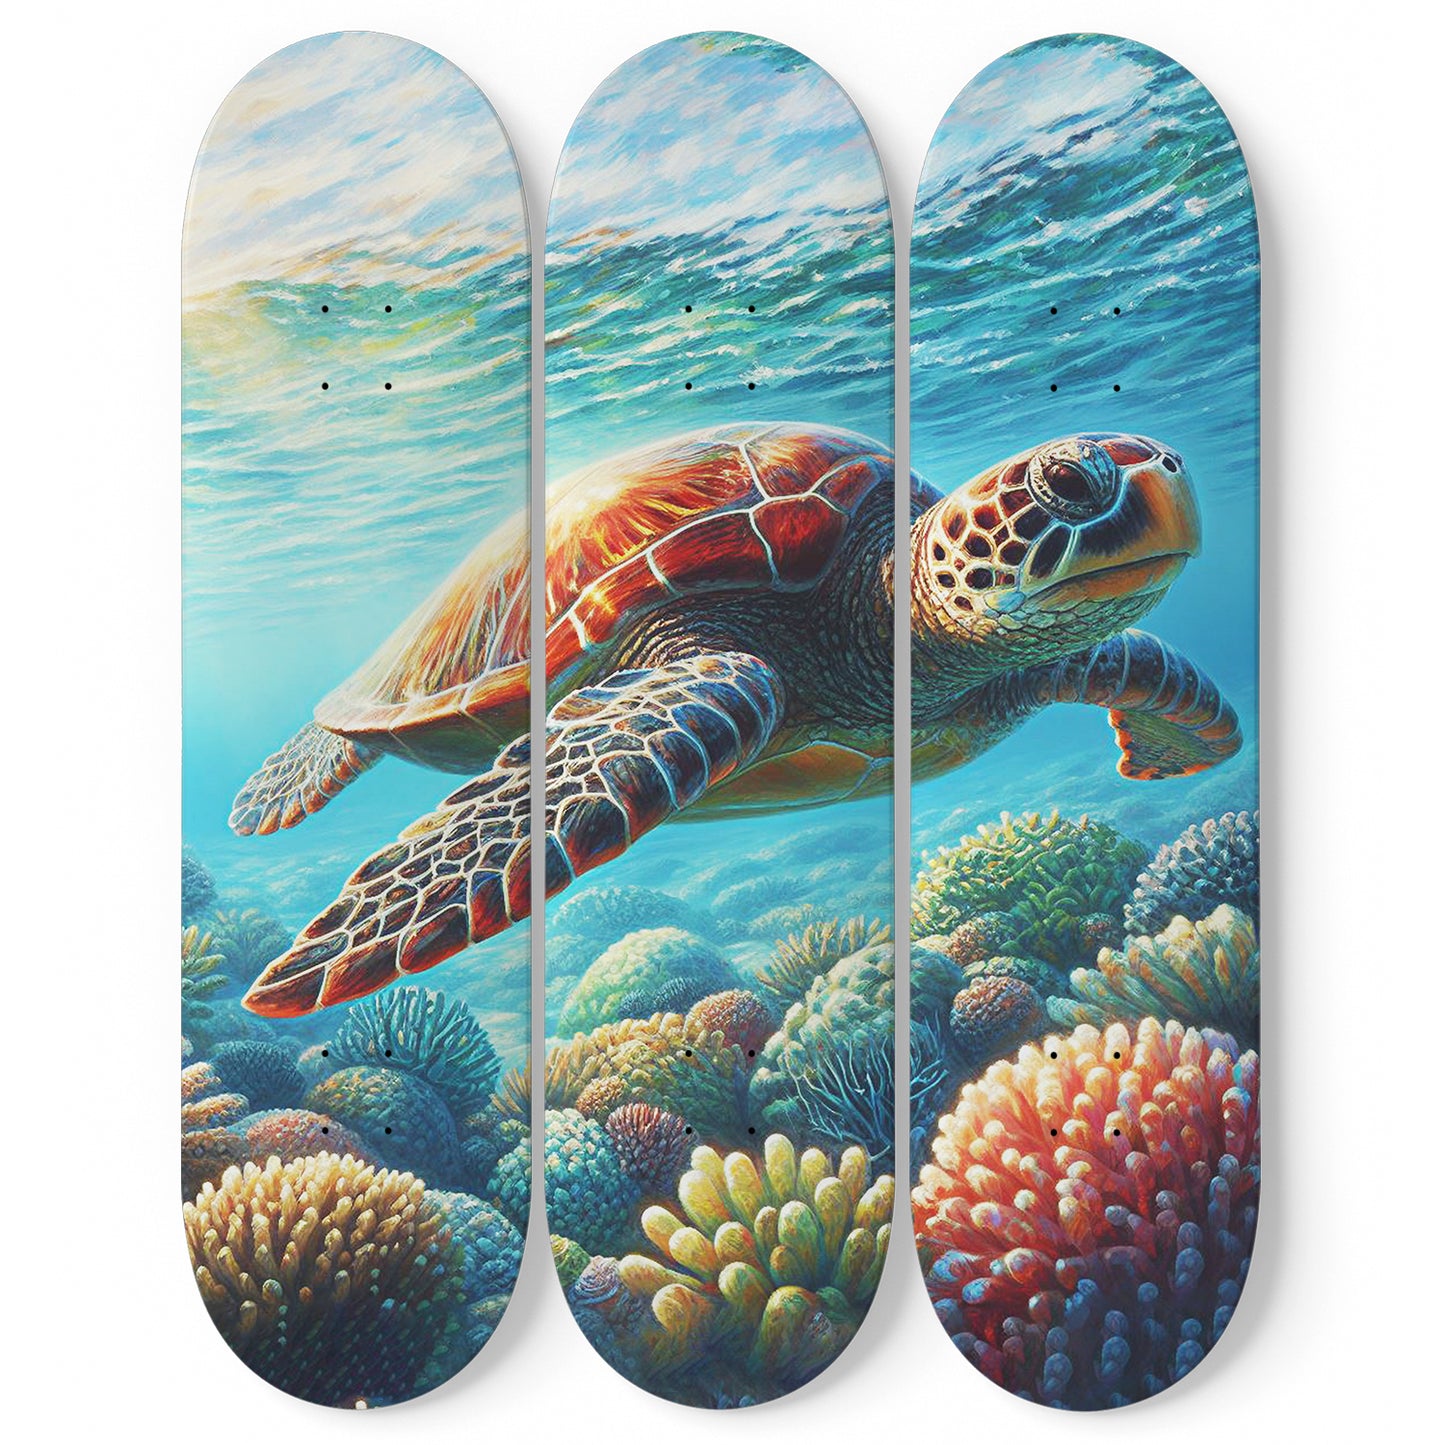 Turtle #1.0 3-Deck Skateboard Wall Art